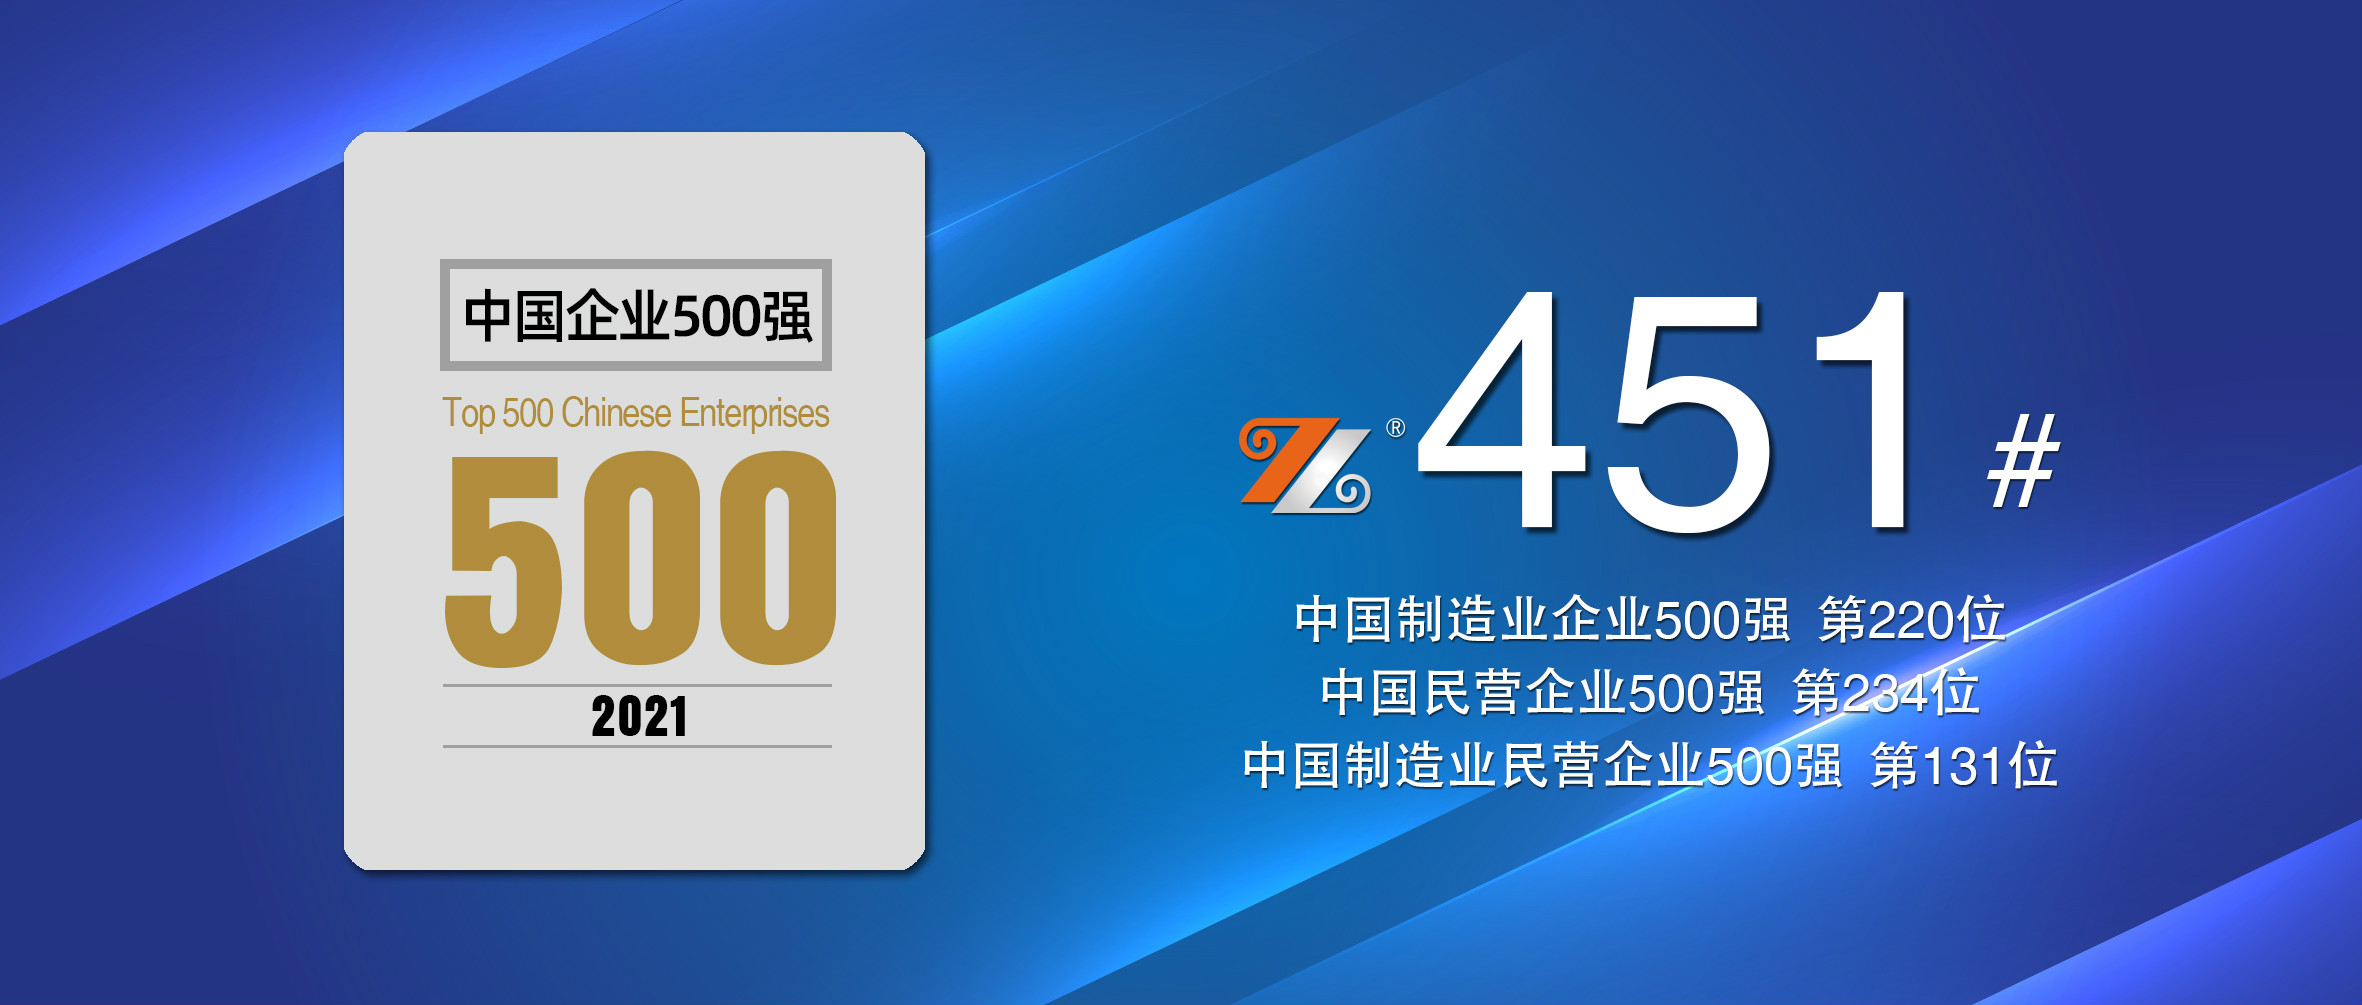 香港精英论坛三中三再度荣登“中国企业500强”，排名升至第451位